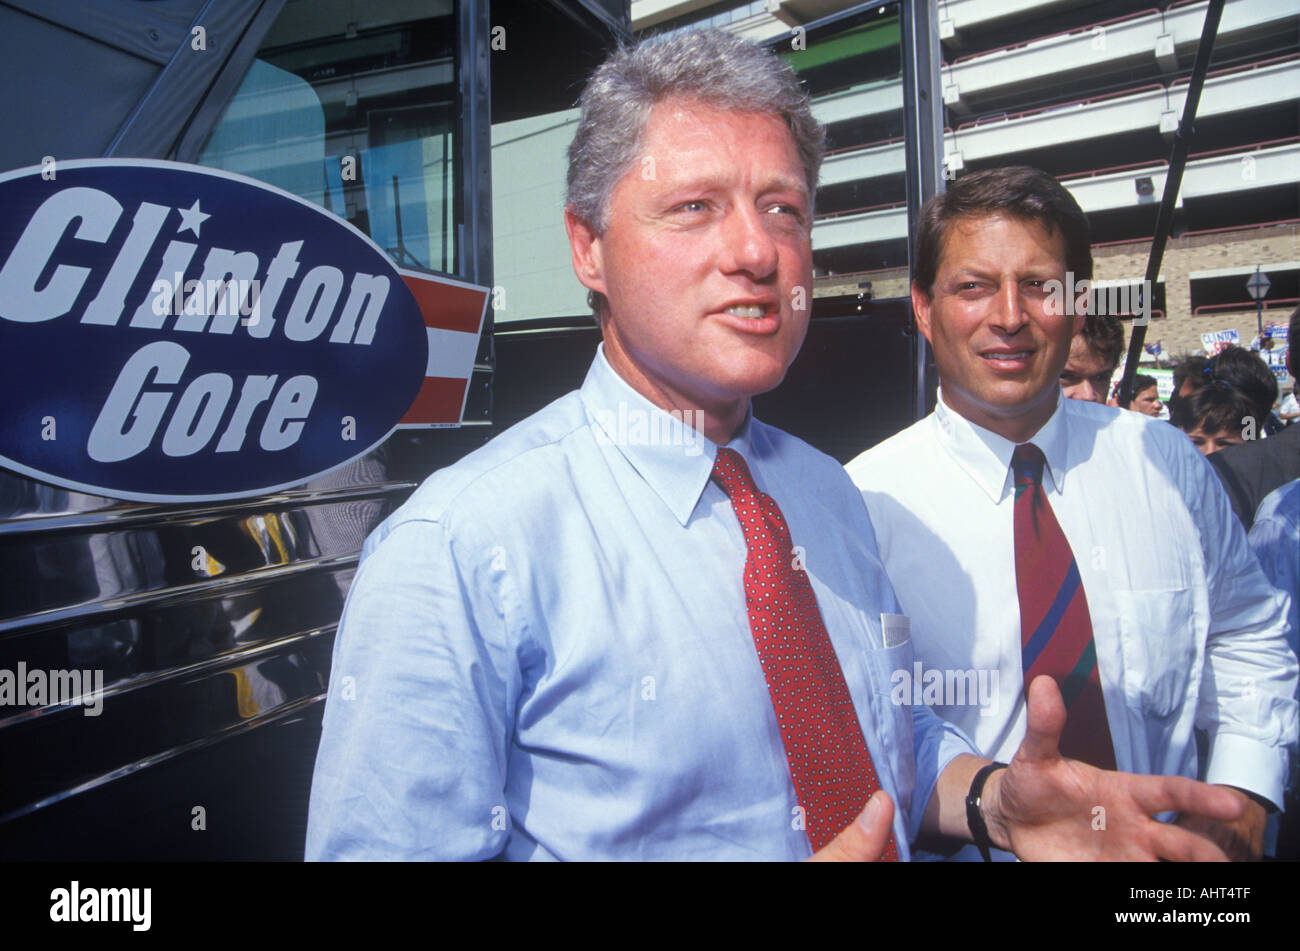 Governor Bill Clinton and Senator Al Gore on the 1992 Buscapade campaign tour in San Antonio Texas Stock Photo